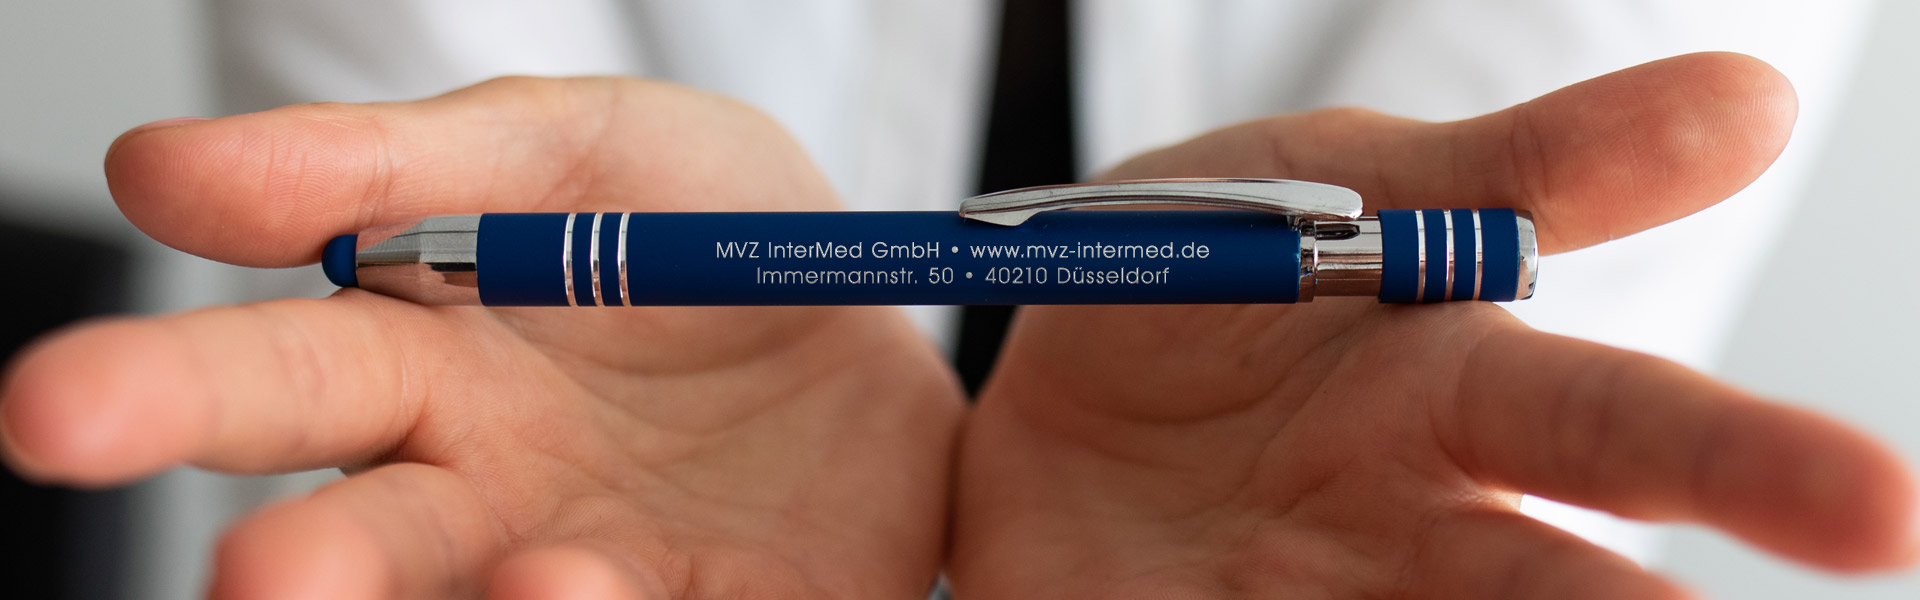 MVZ InterMed GmbH – Psychotherapie, Suchtmedizin und Allgemeinmedizin in Düsseldorf